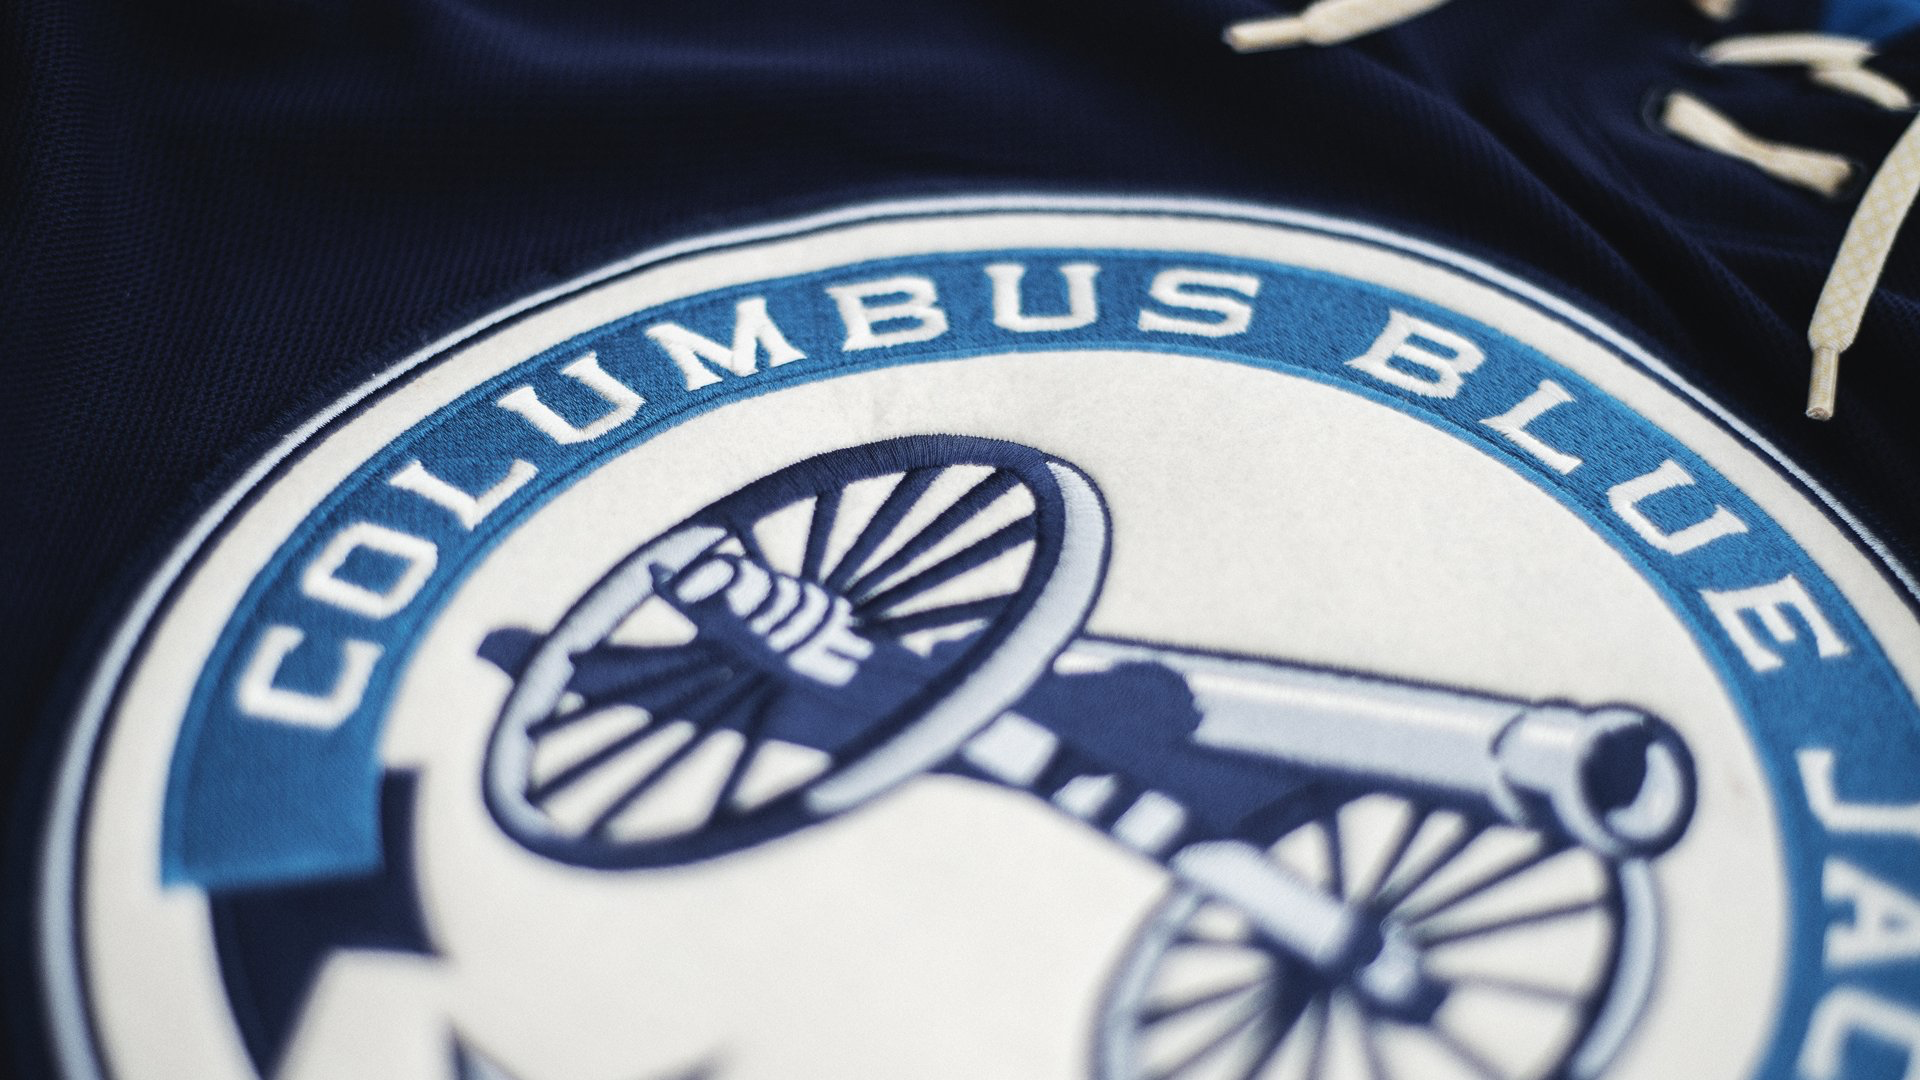 Columbus Blue Jackets To Revive Cannon Alternate Uniform Set